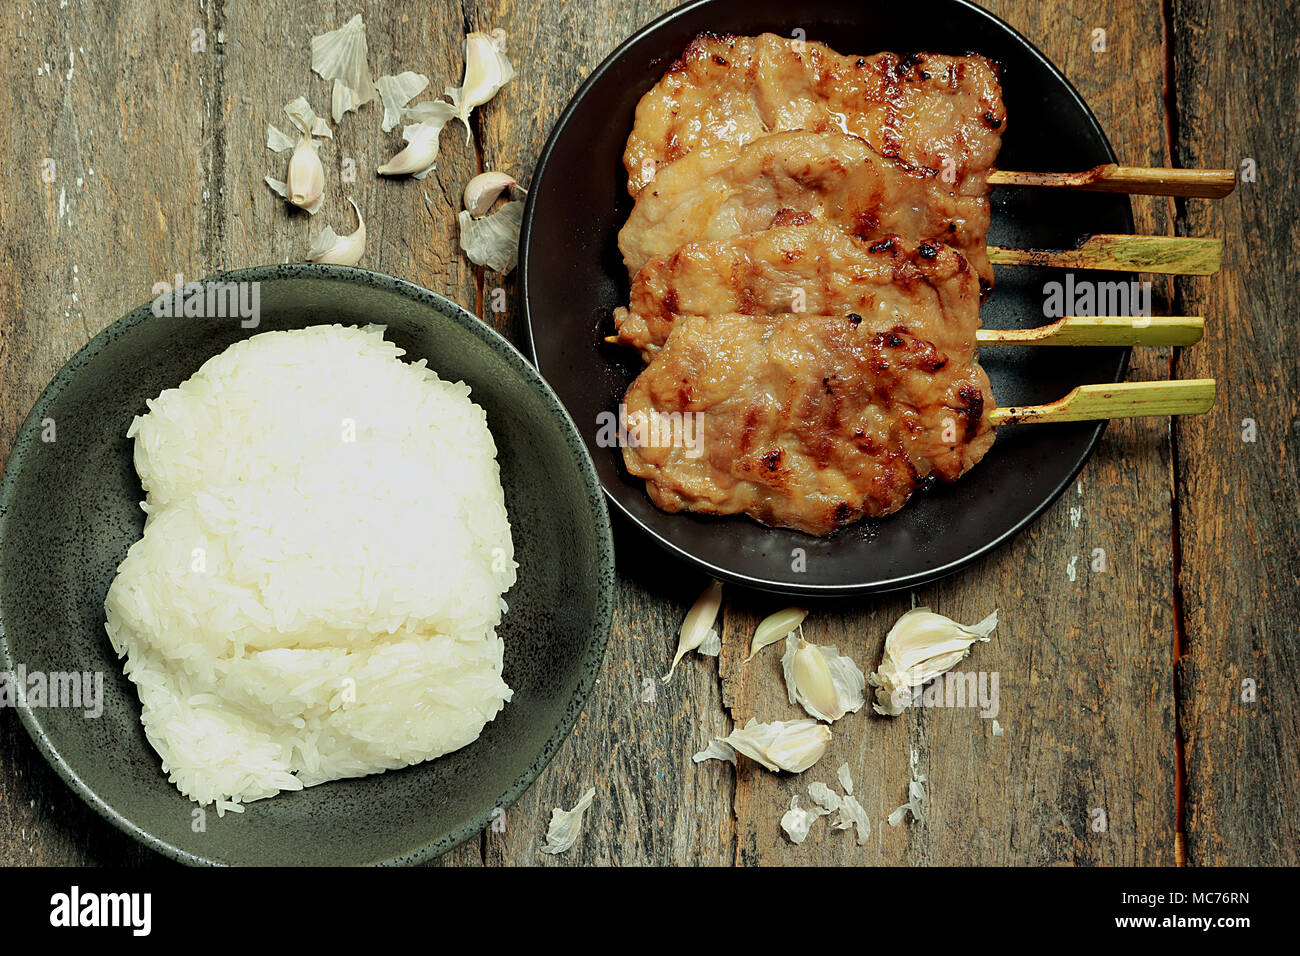 En esta imagen, hay arroz pegajoso, asado de cerdo. El ajo es un componente. Foto de stock